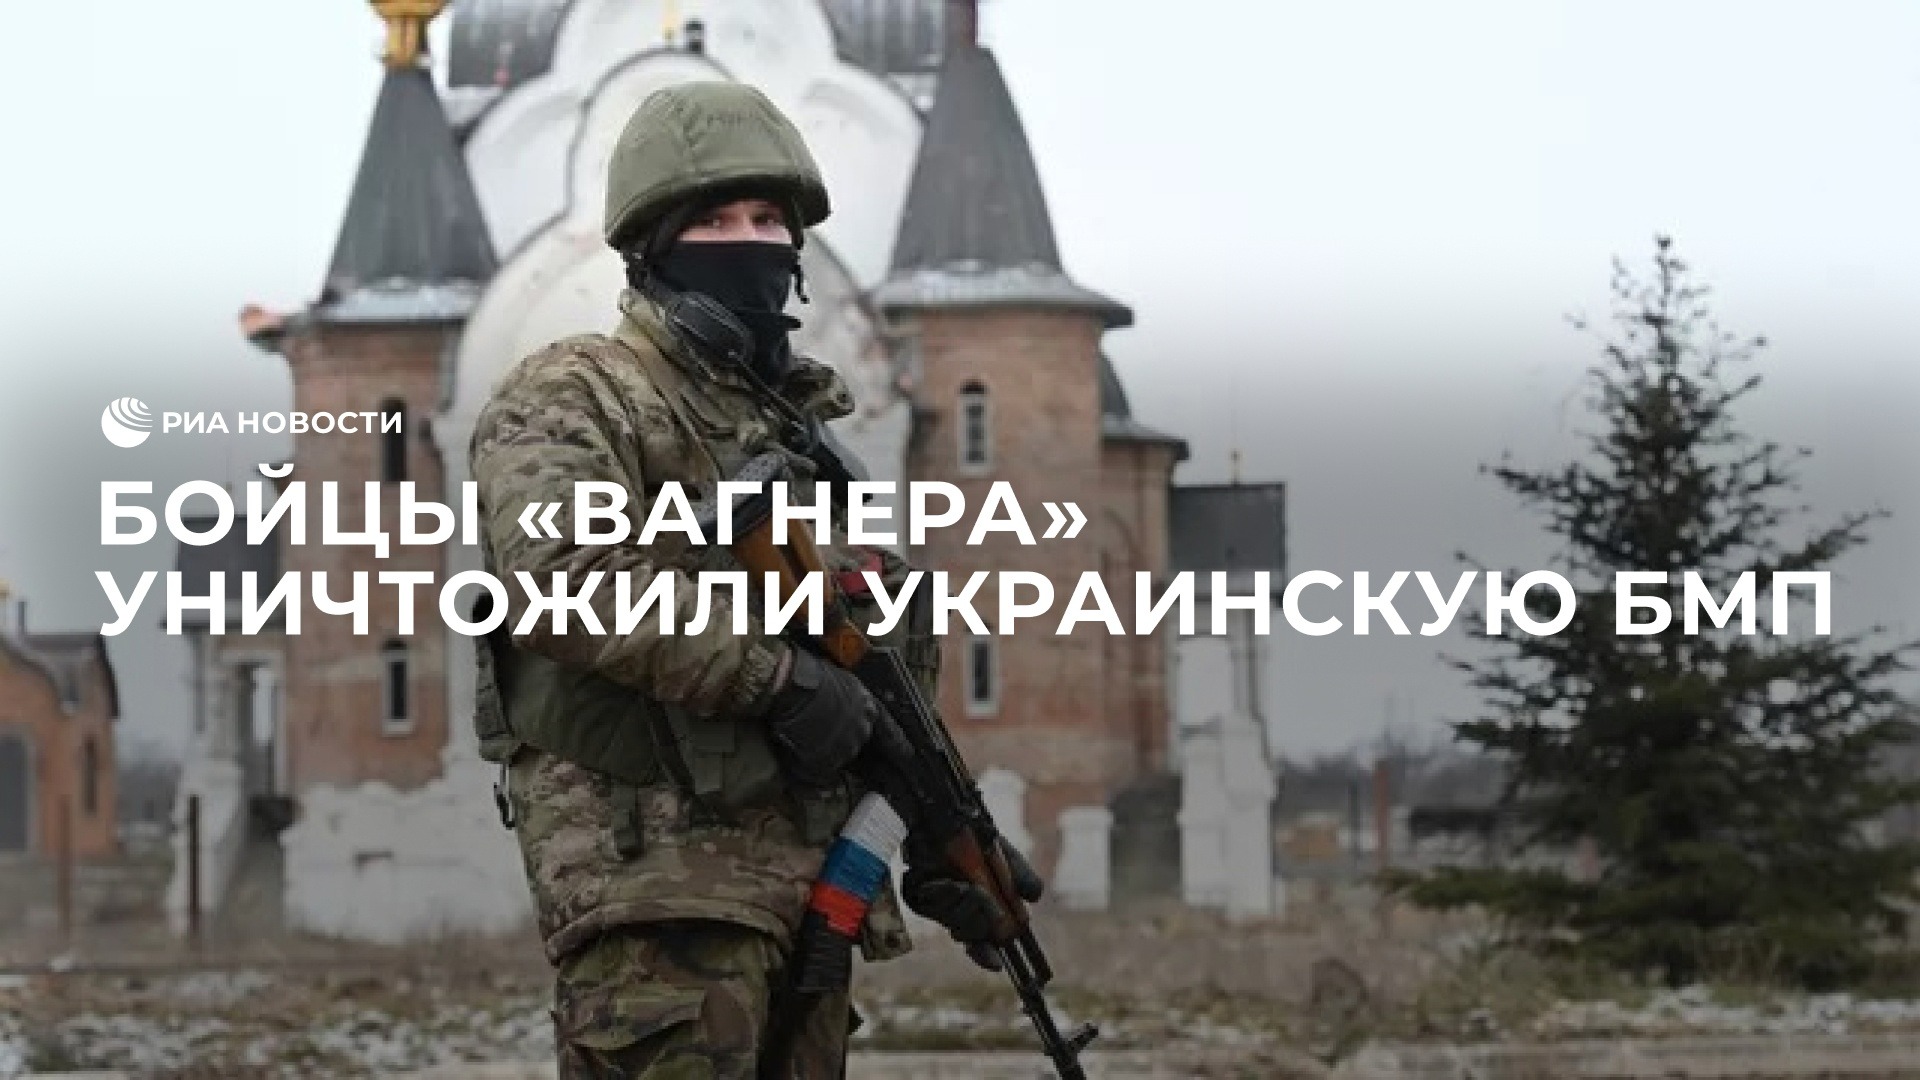 Бойцы "Вагнера" уничтожили украинскую БМП